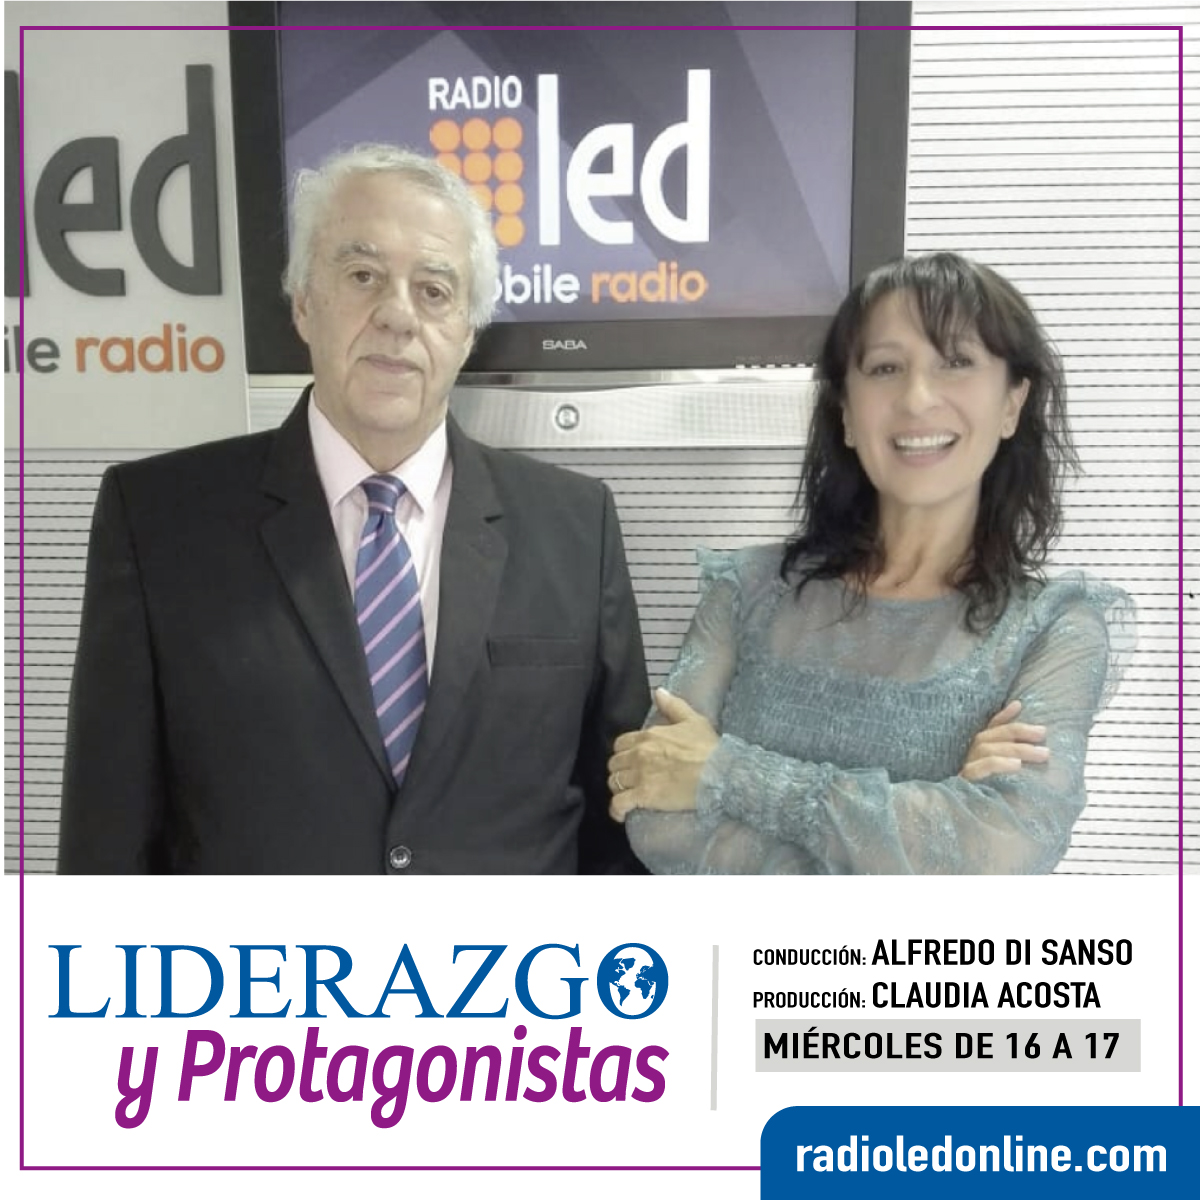 #Podcast Liderazgo y Protagonistas | 27.06: Entrevistas con @VestirTuMaleta y @SomosDartagnan